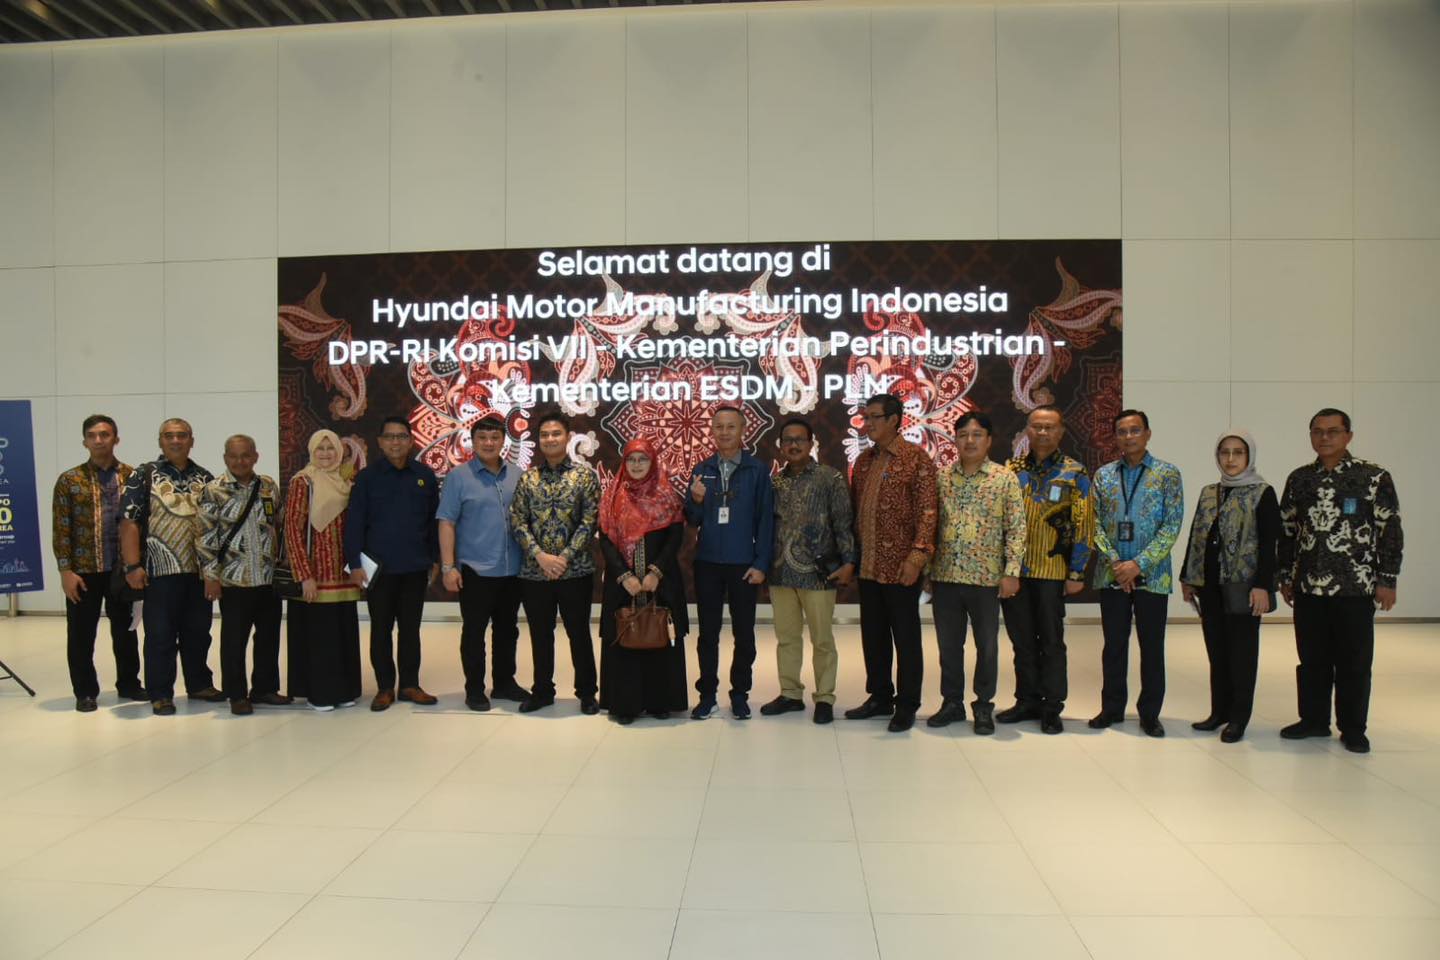 Komisi VII Dukung Pengembangan Ekosistem KBLBB PT Hyundai Motor Manufacturing Indonesia